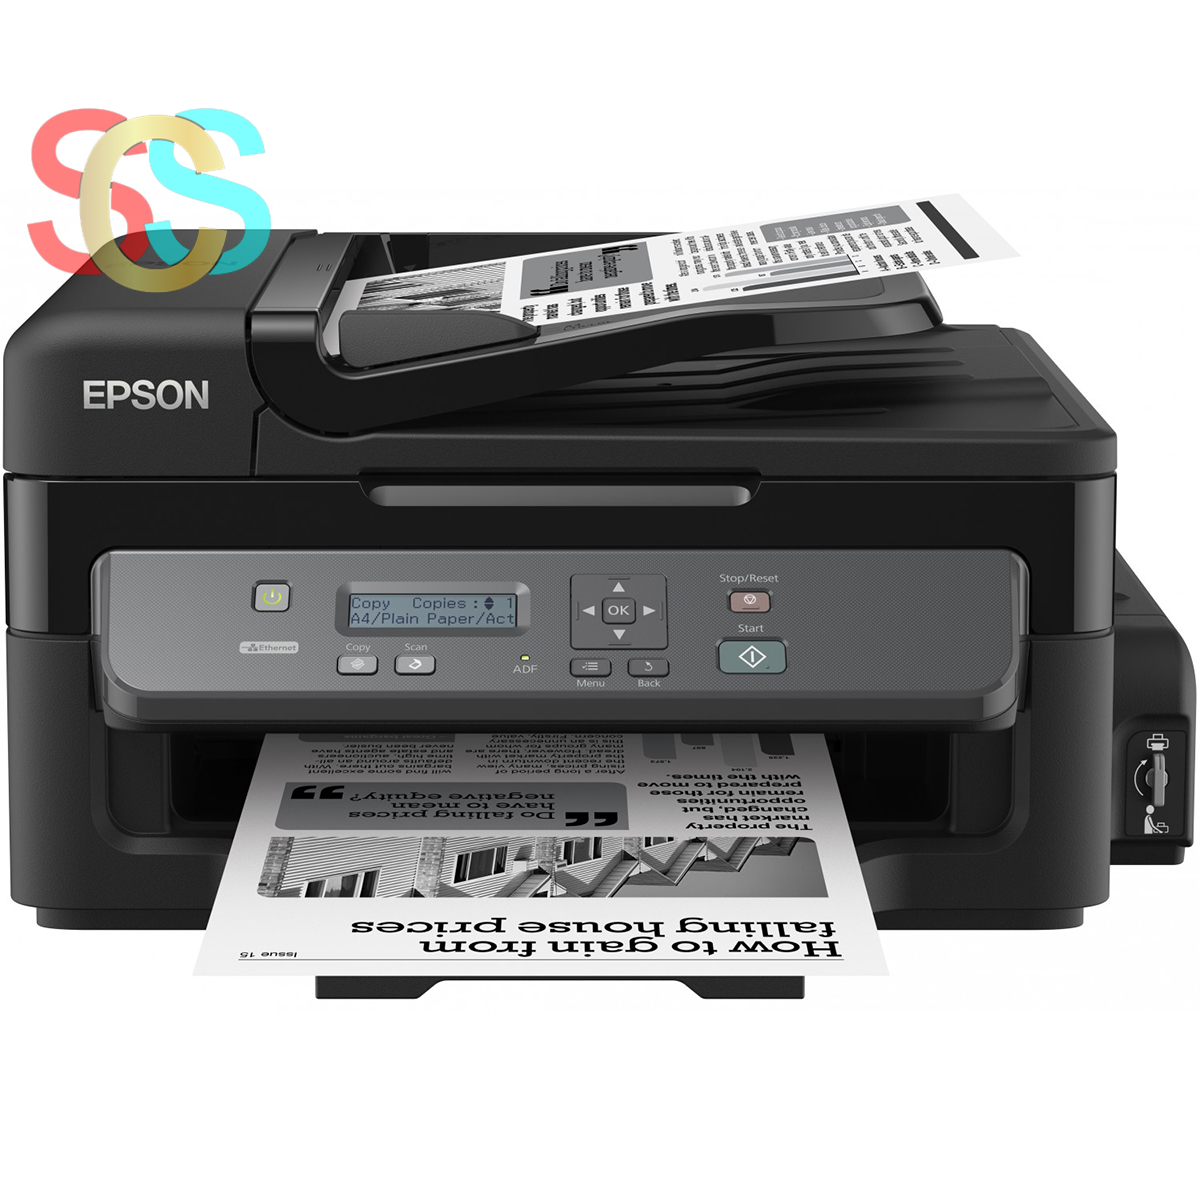 Epson EcoTank M200 Multifunction Ink Tank Printer